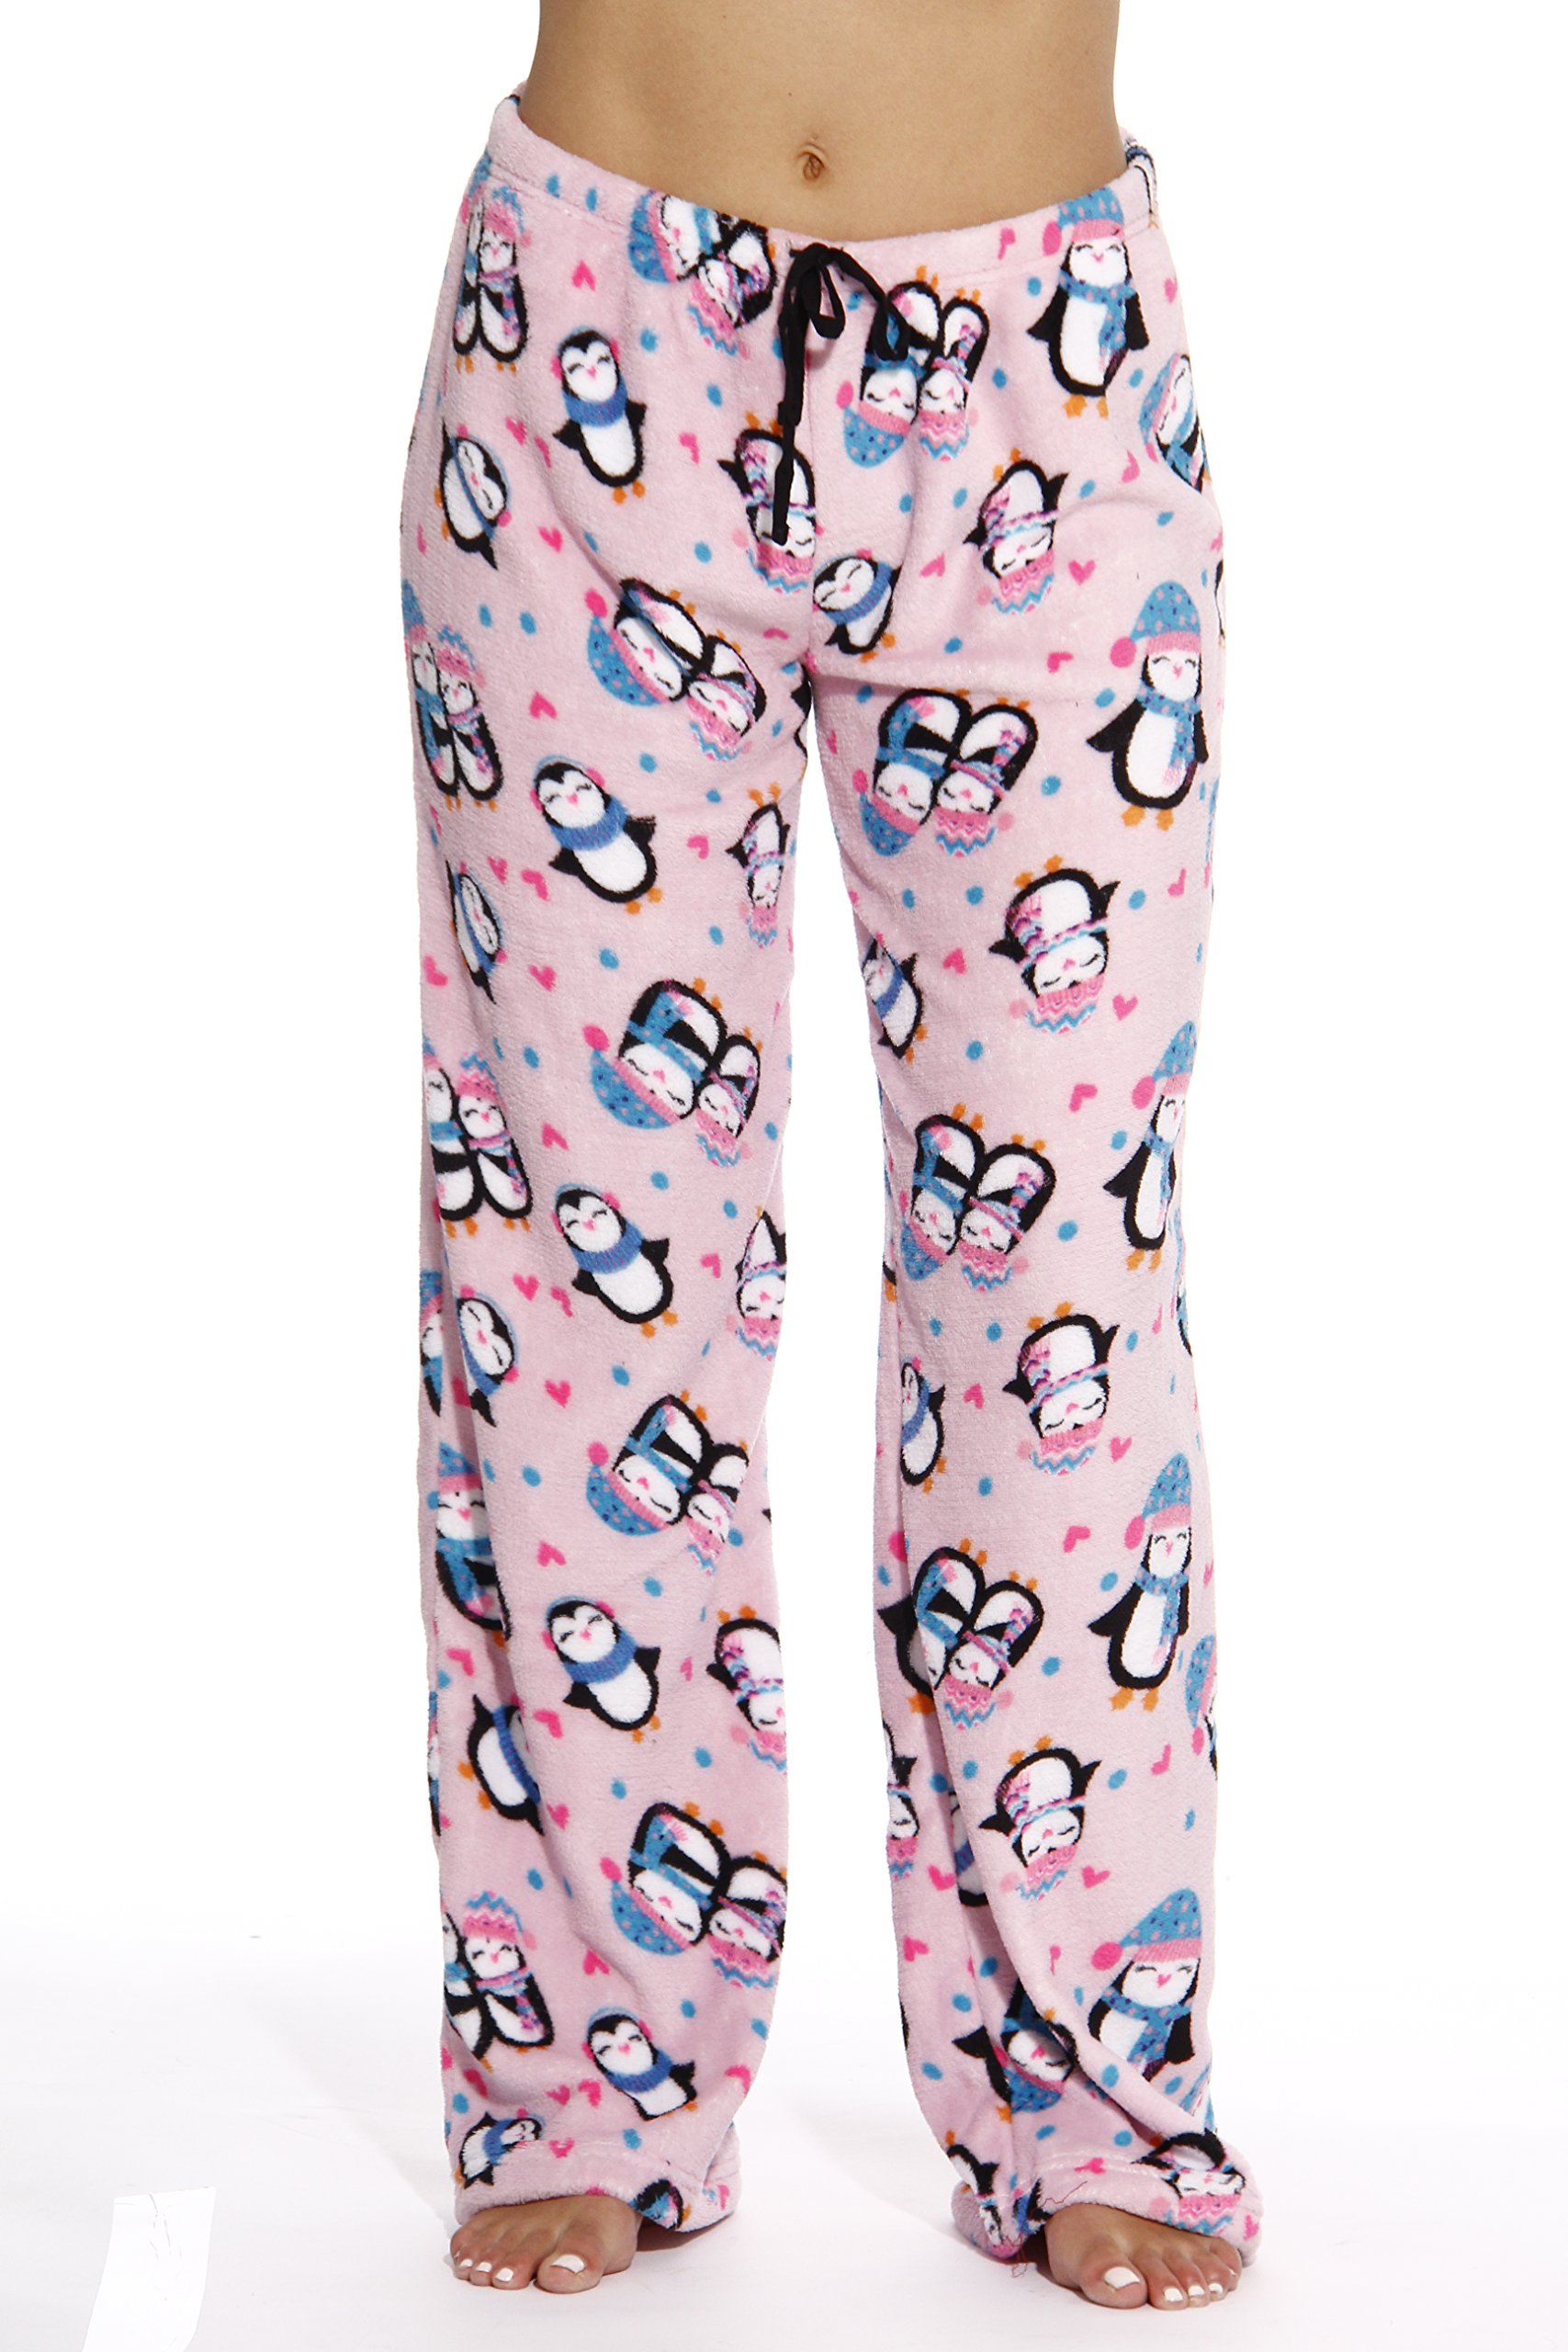 Just Love Plush Pajama Pants for Girls 45501-REDBLK-6X